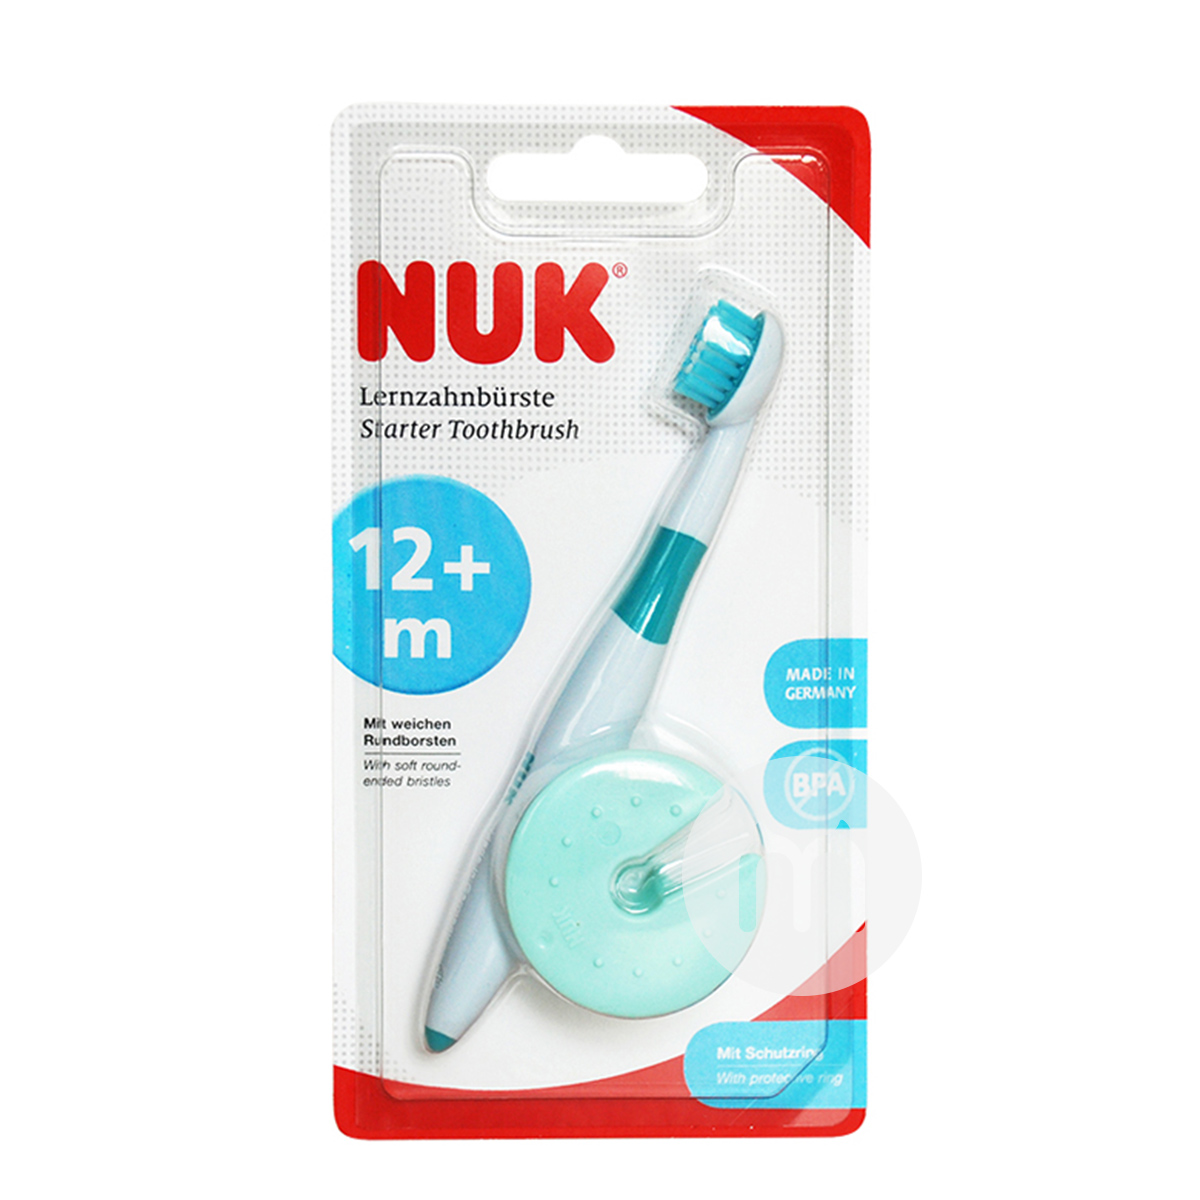 NUK 德國NUK兒童安全乳牙訓練牙刷含保護套 海外本土原版